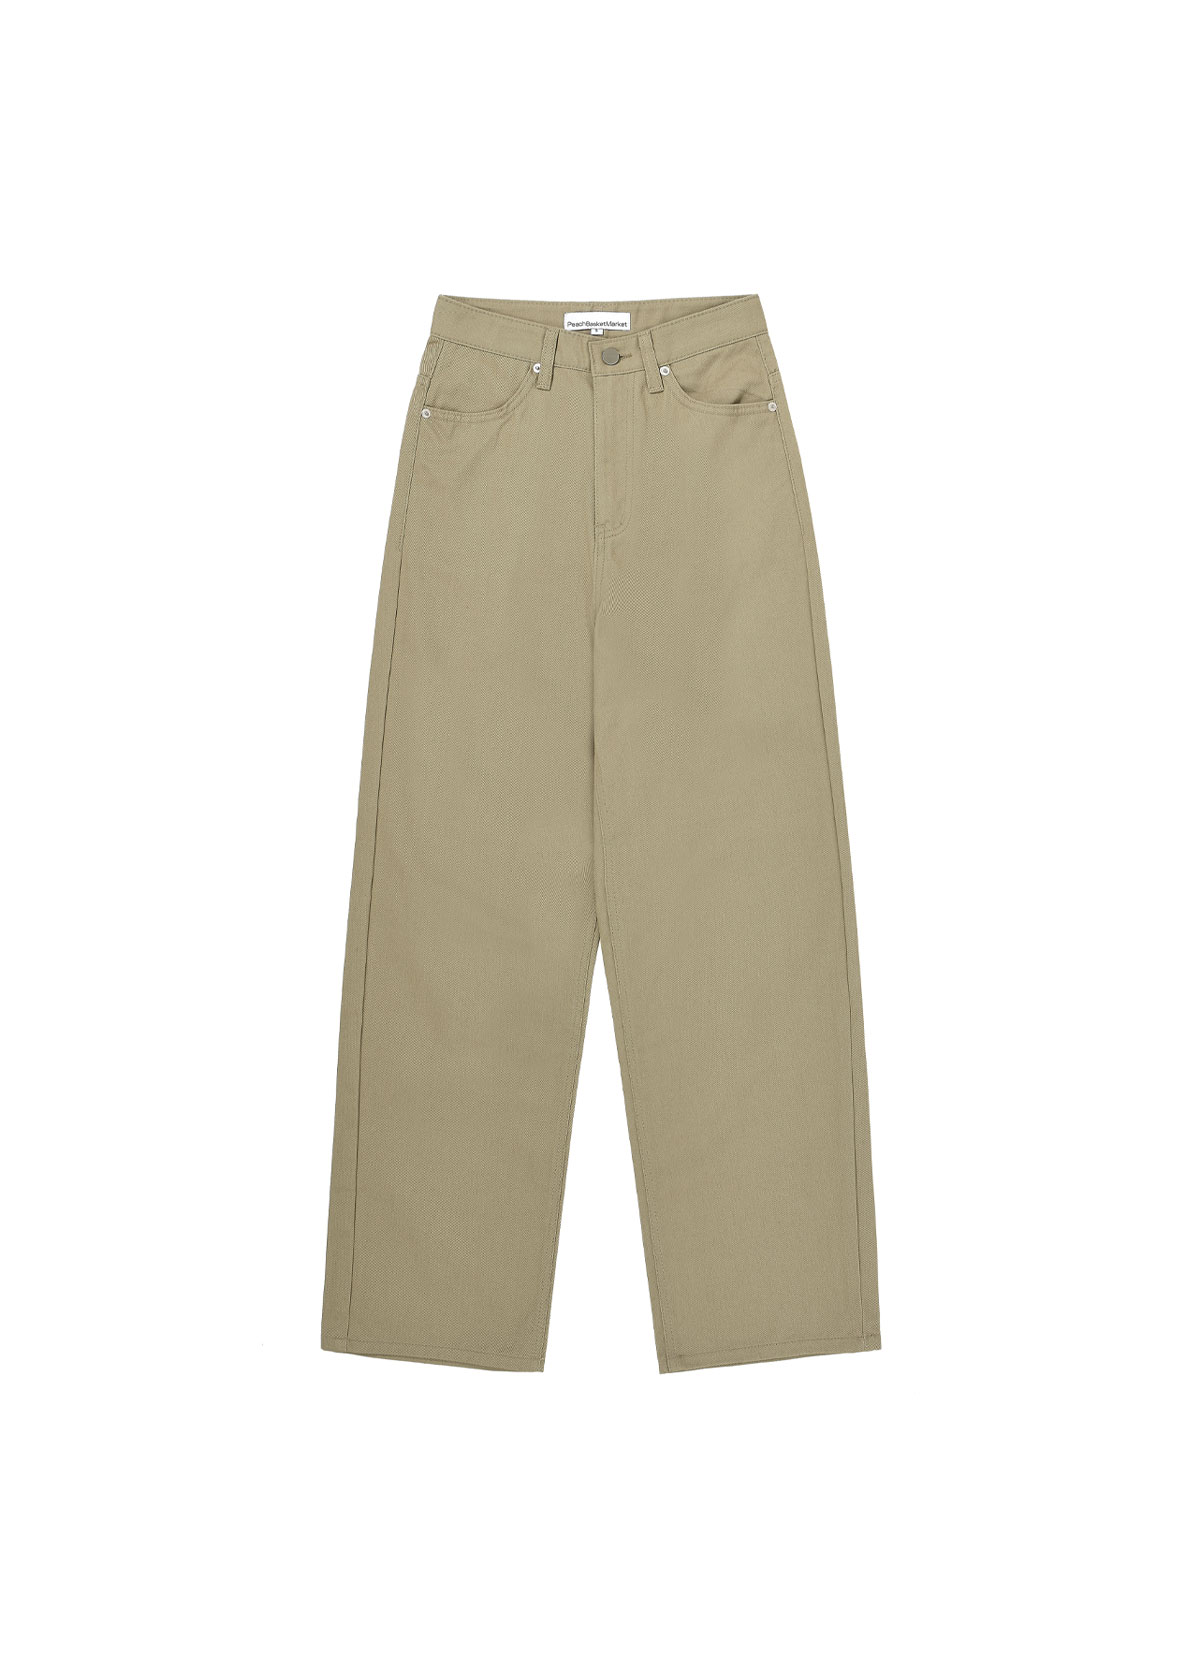 Cotton Pants (beige)